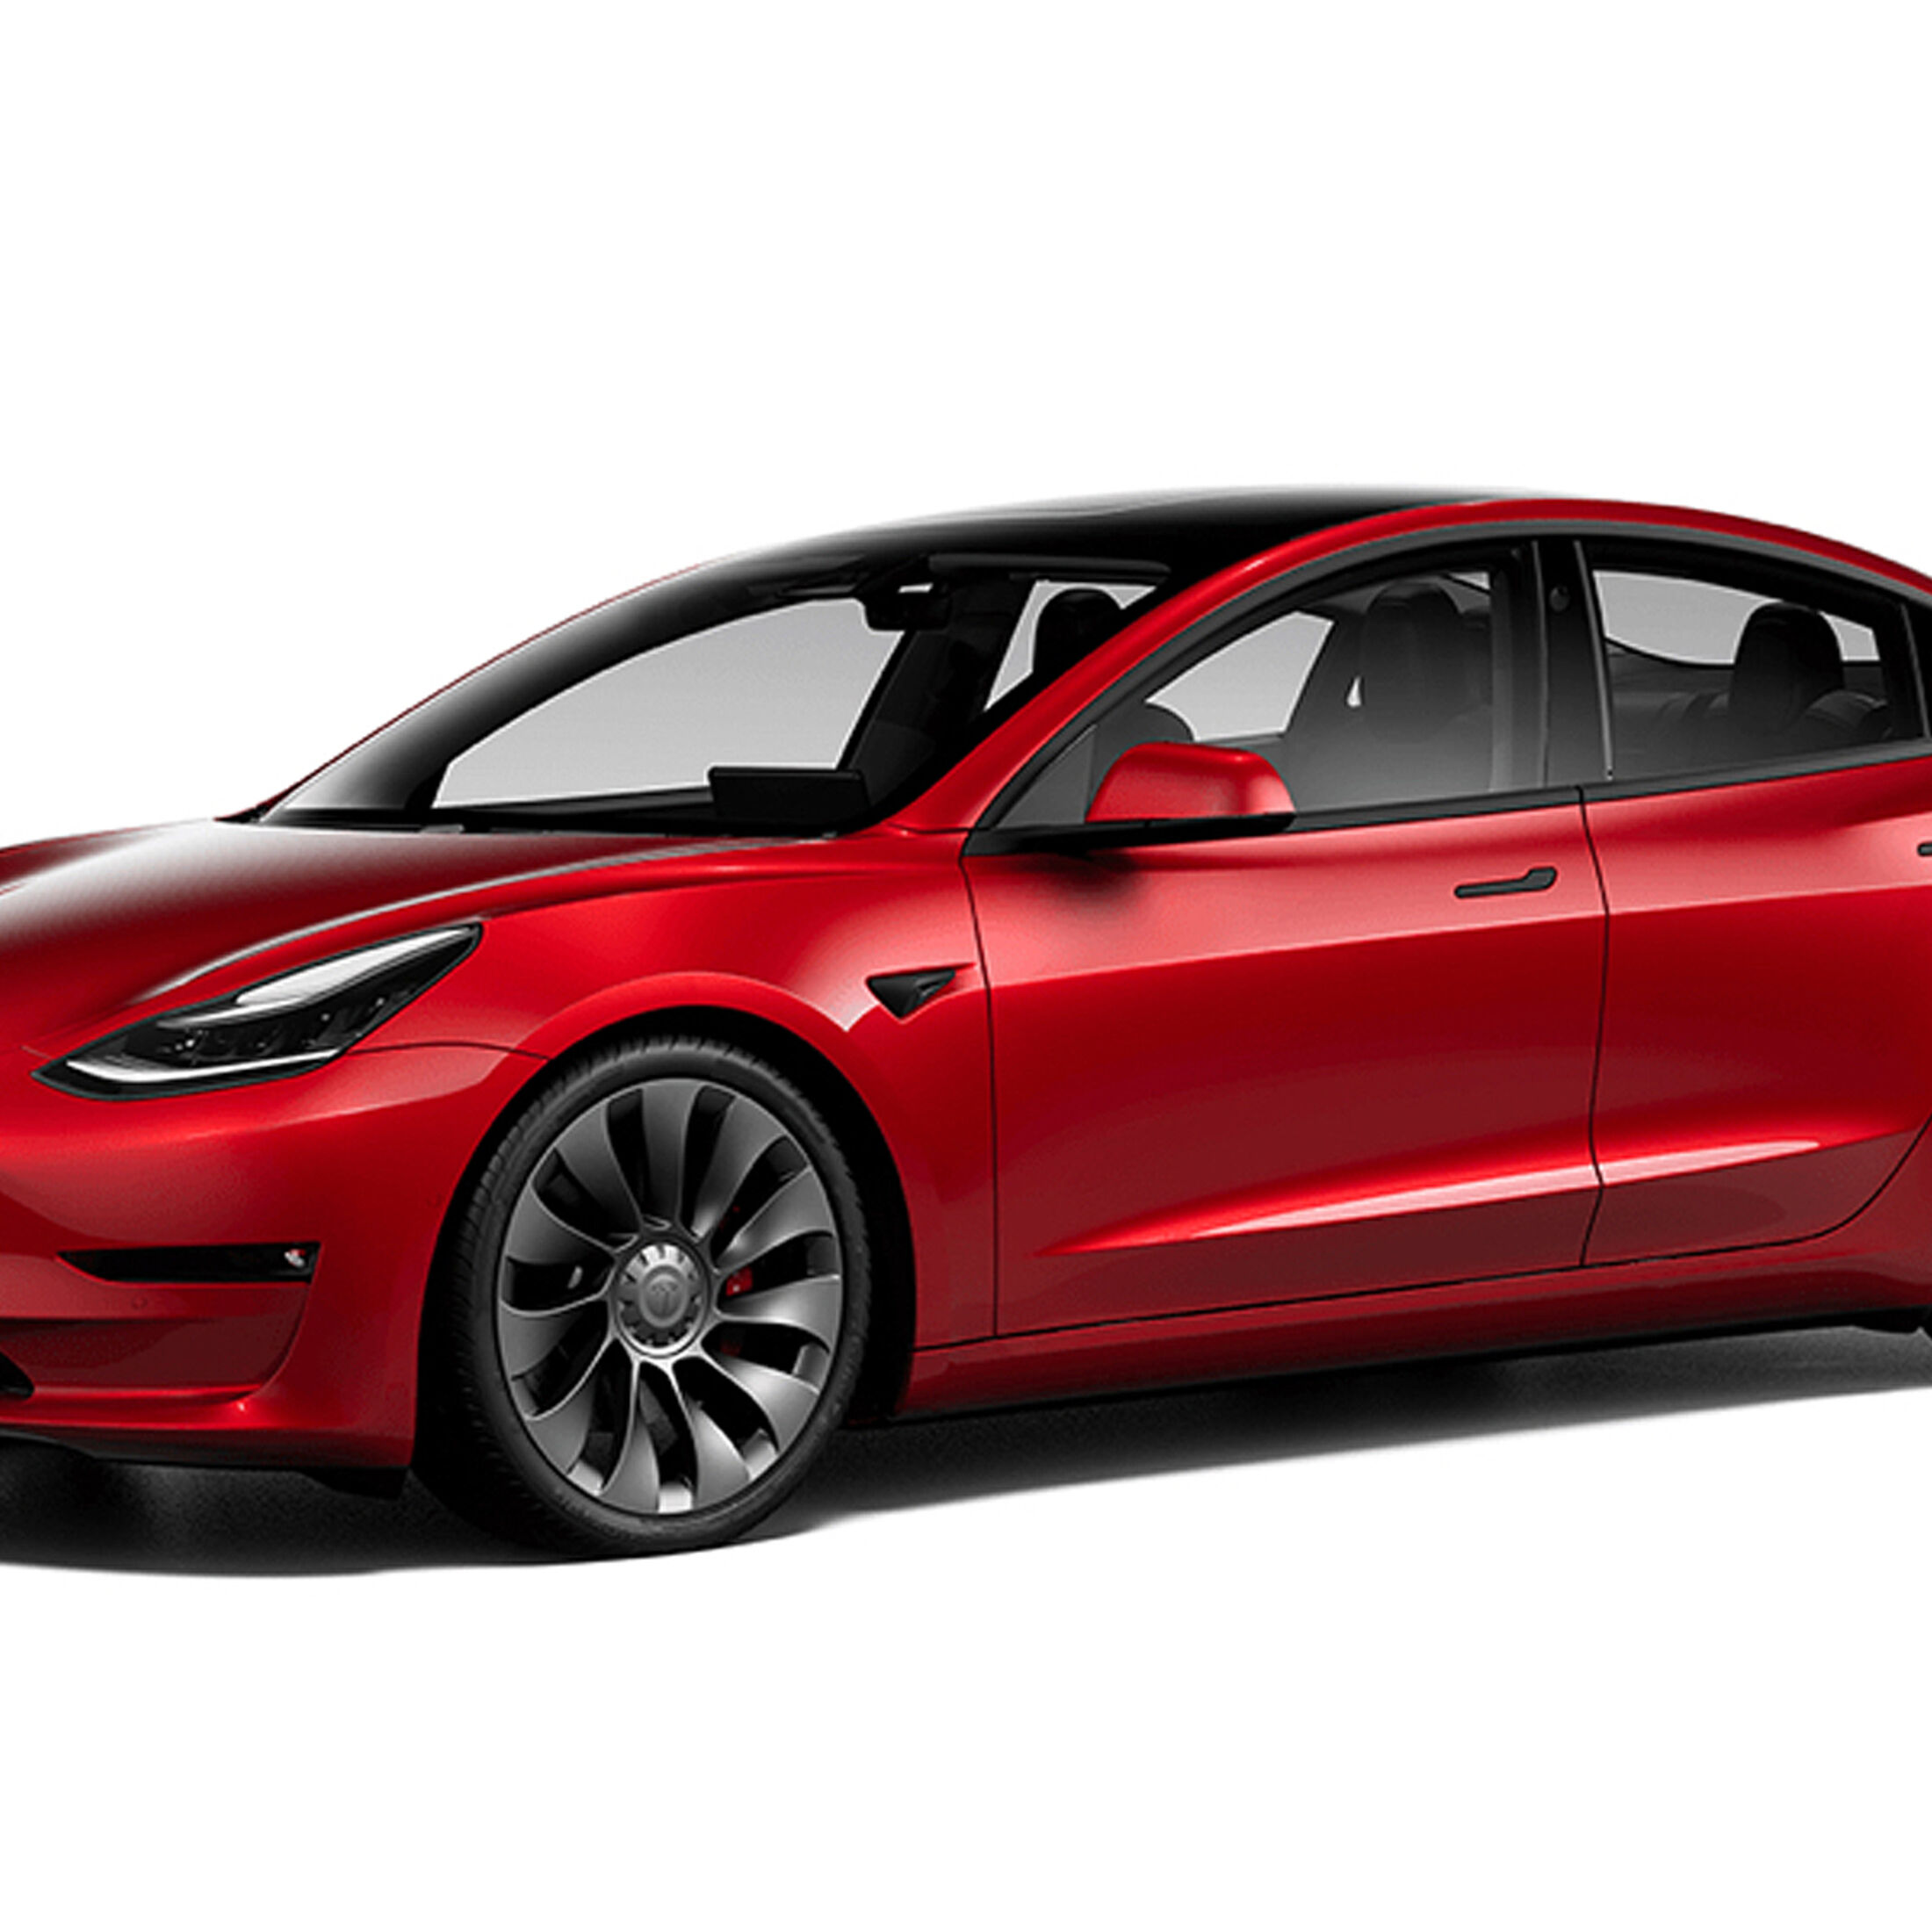 Preissenkung bei Tesla: Model 3 ab 35.000 Euro